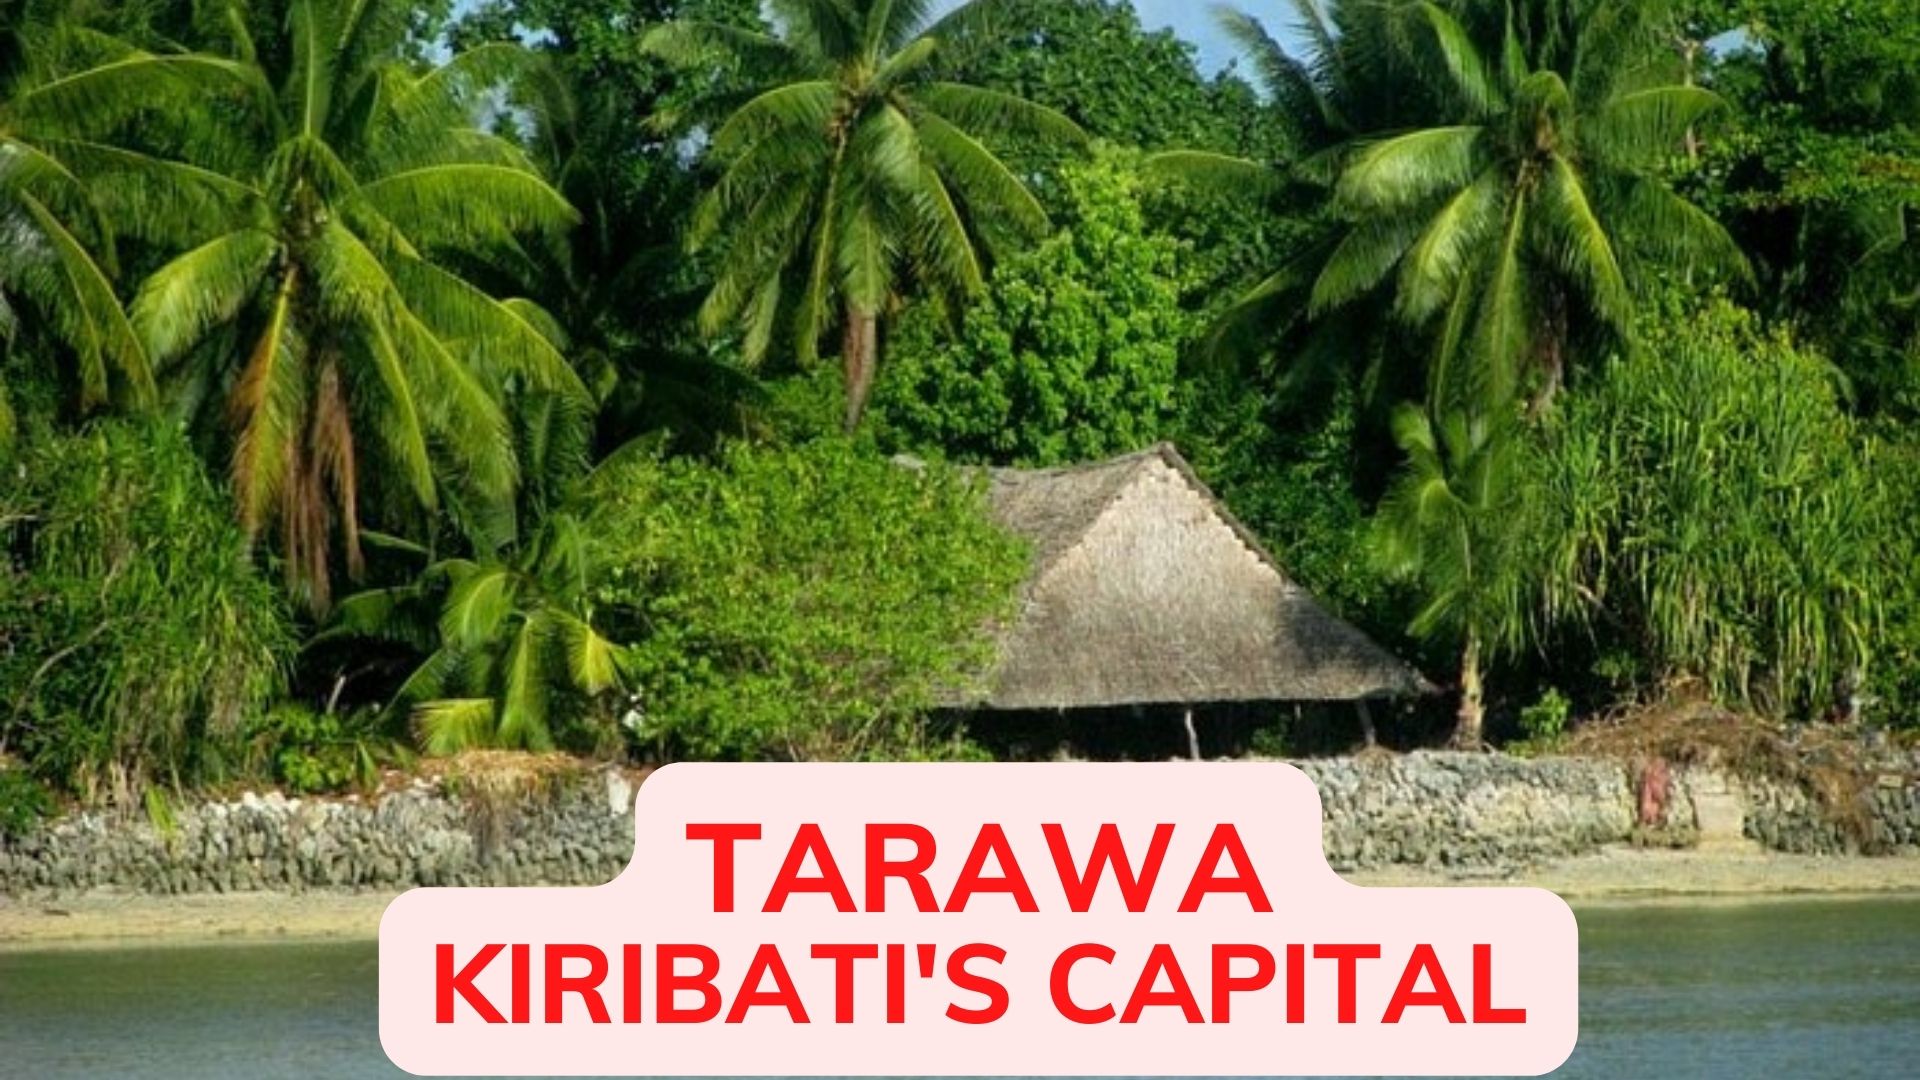 Tarawa - The Republic Of Kiribati's Capital